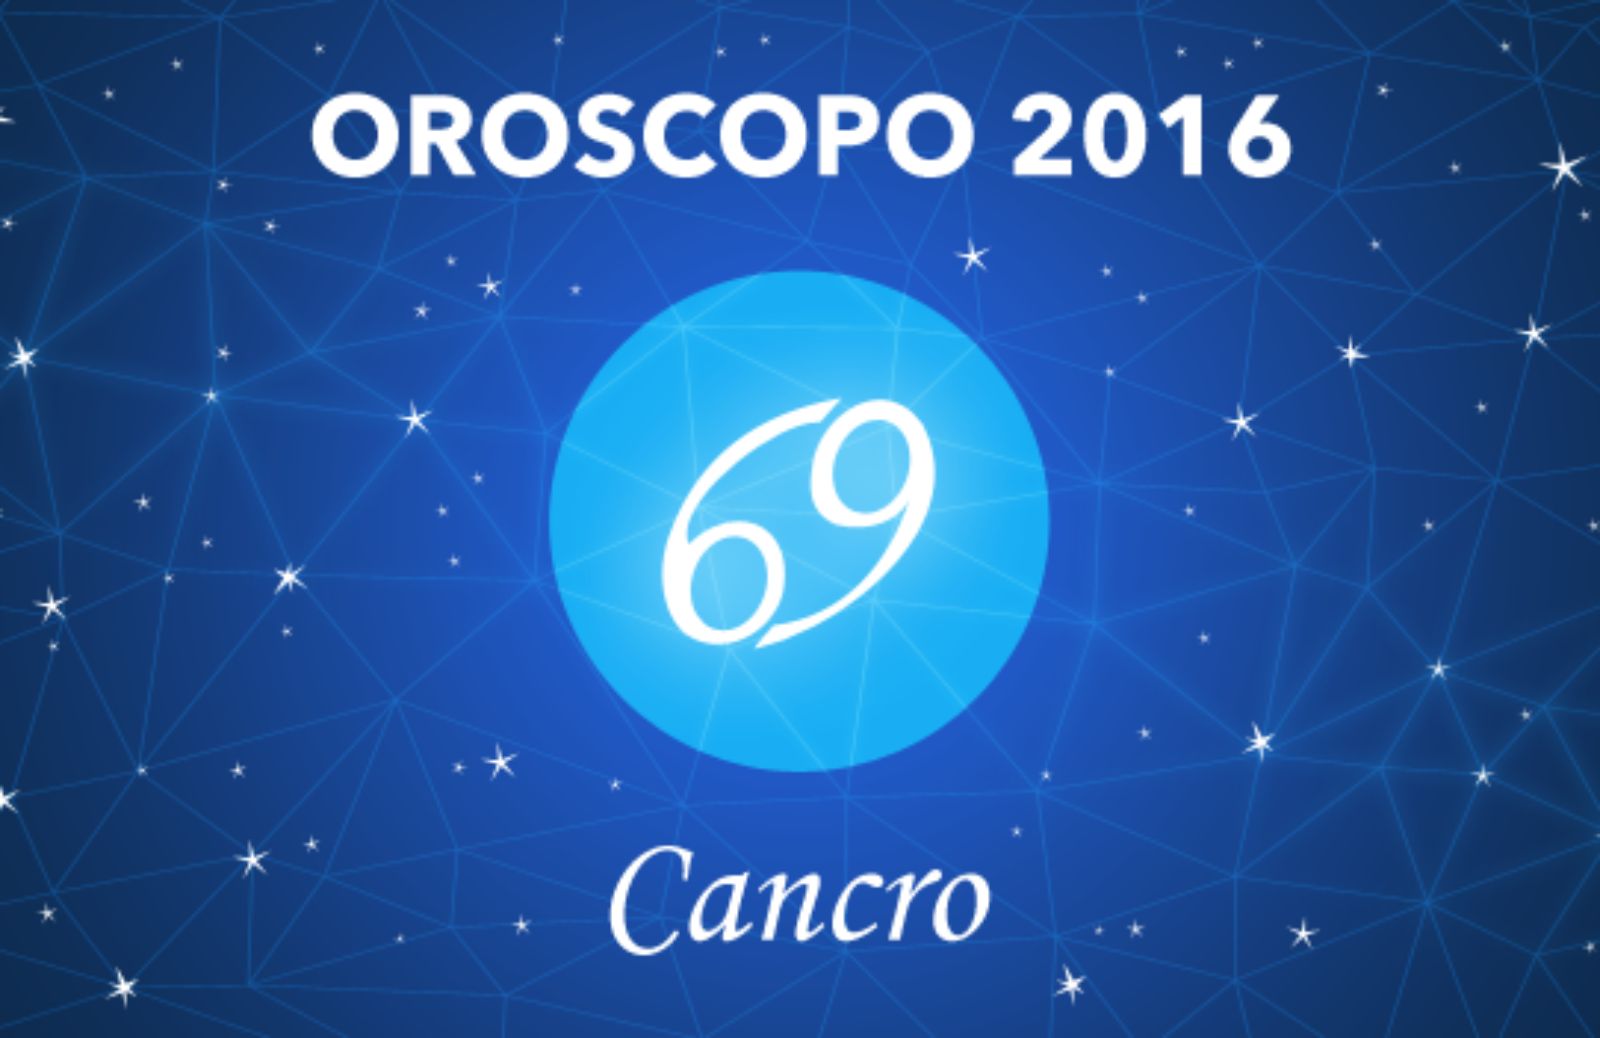 Oroscopo 2016 - Cancro